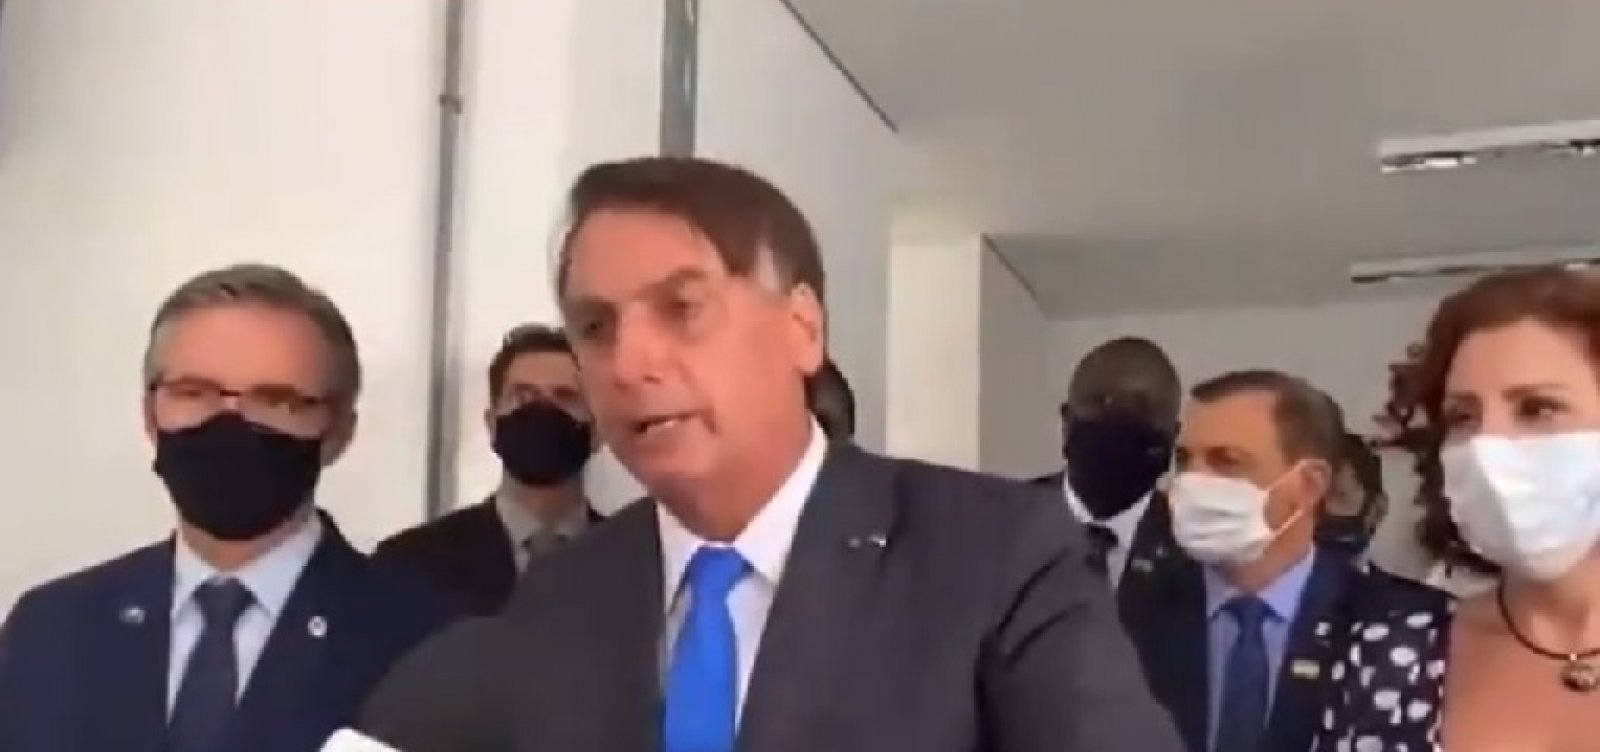 Bolsonaro tira a máscara durante entrevista e faz novos ataques à imprensa: "Vocês fazem jornalismo canalha"